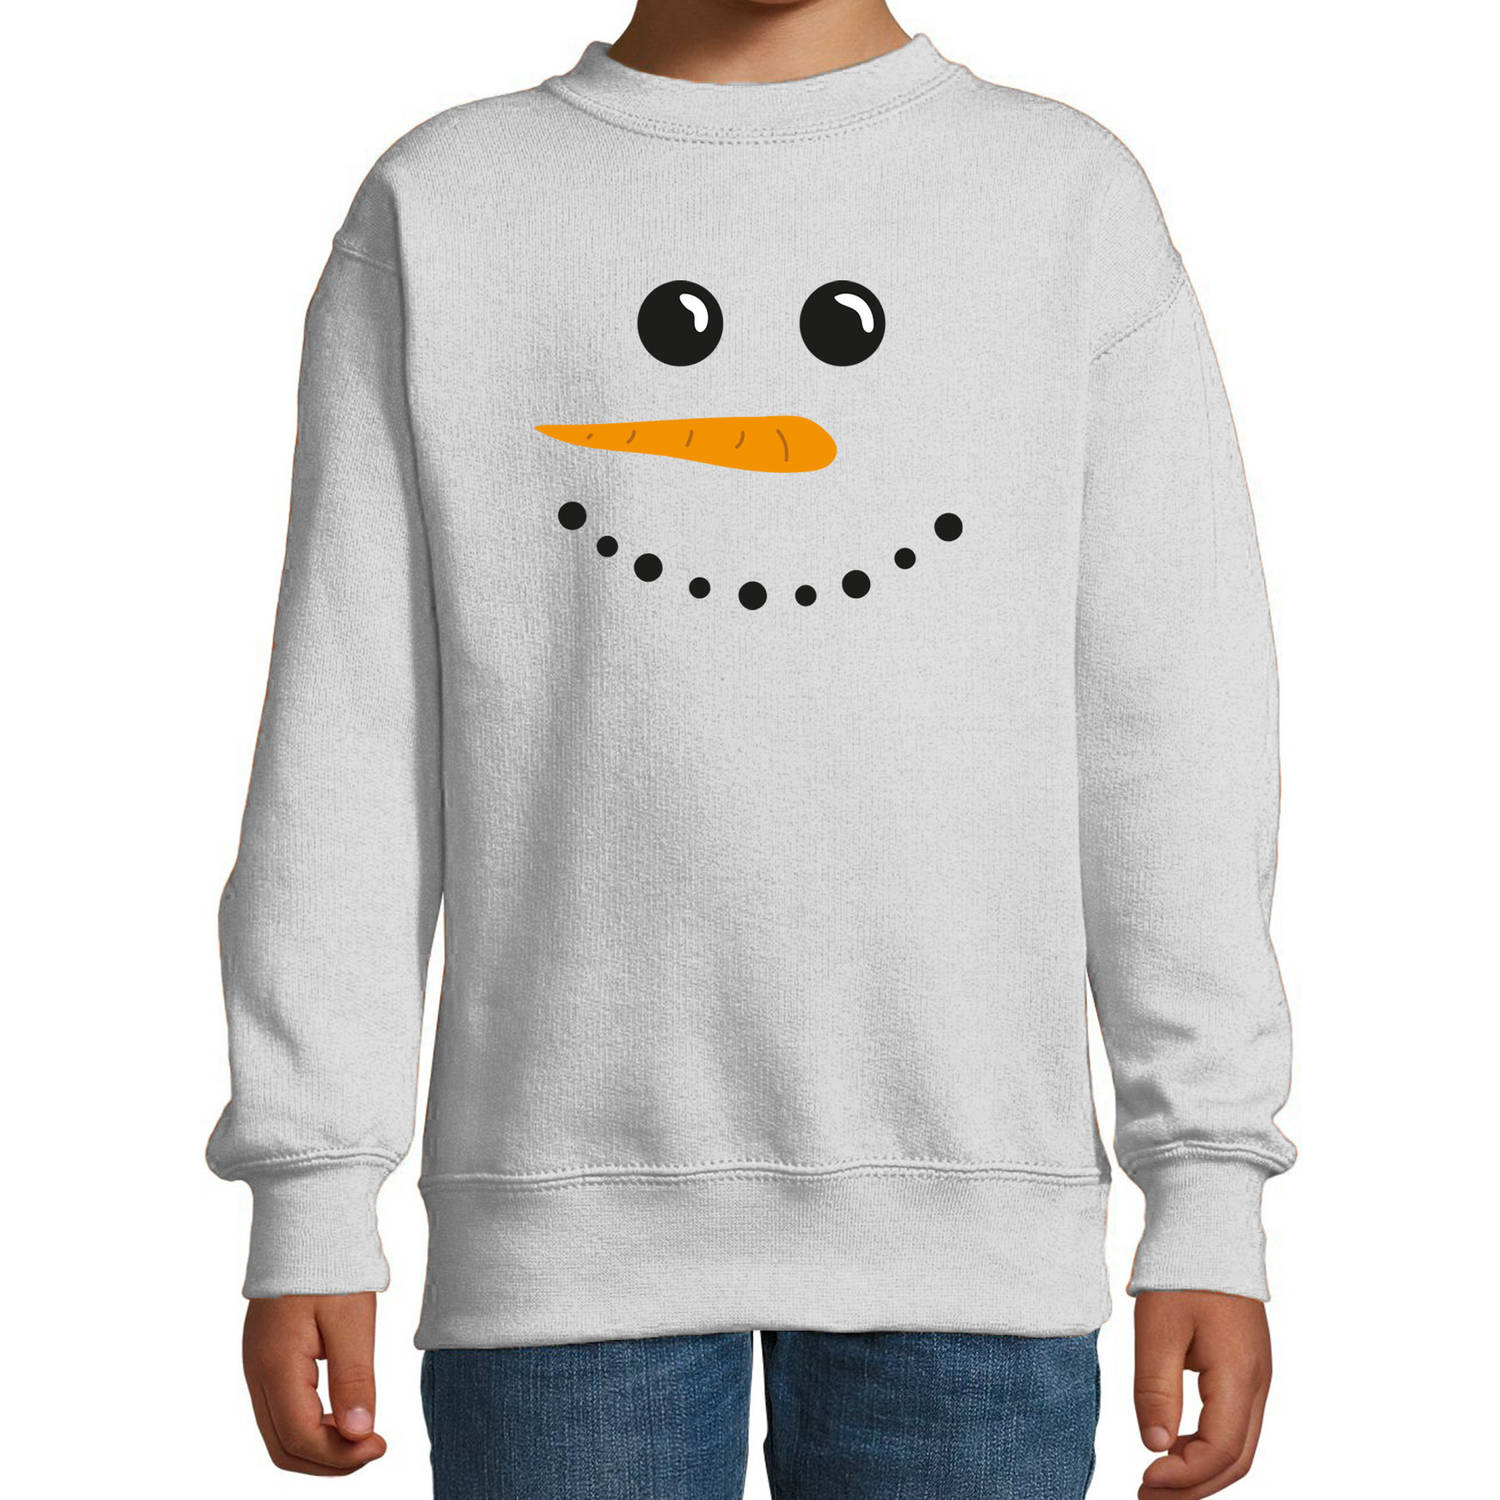 Sneeuwpop foute Kerstsweater / Kersttrui grijs voor kinderen 9-11 jaar (134/146) - kerst truien kind